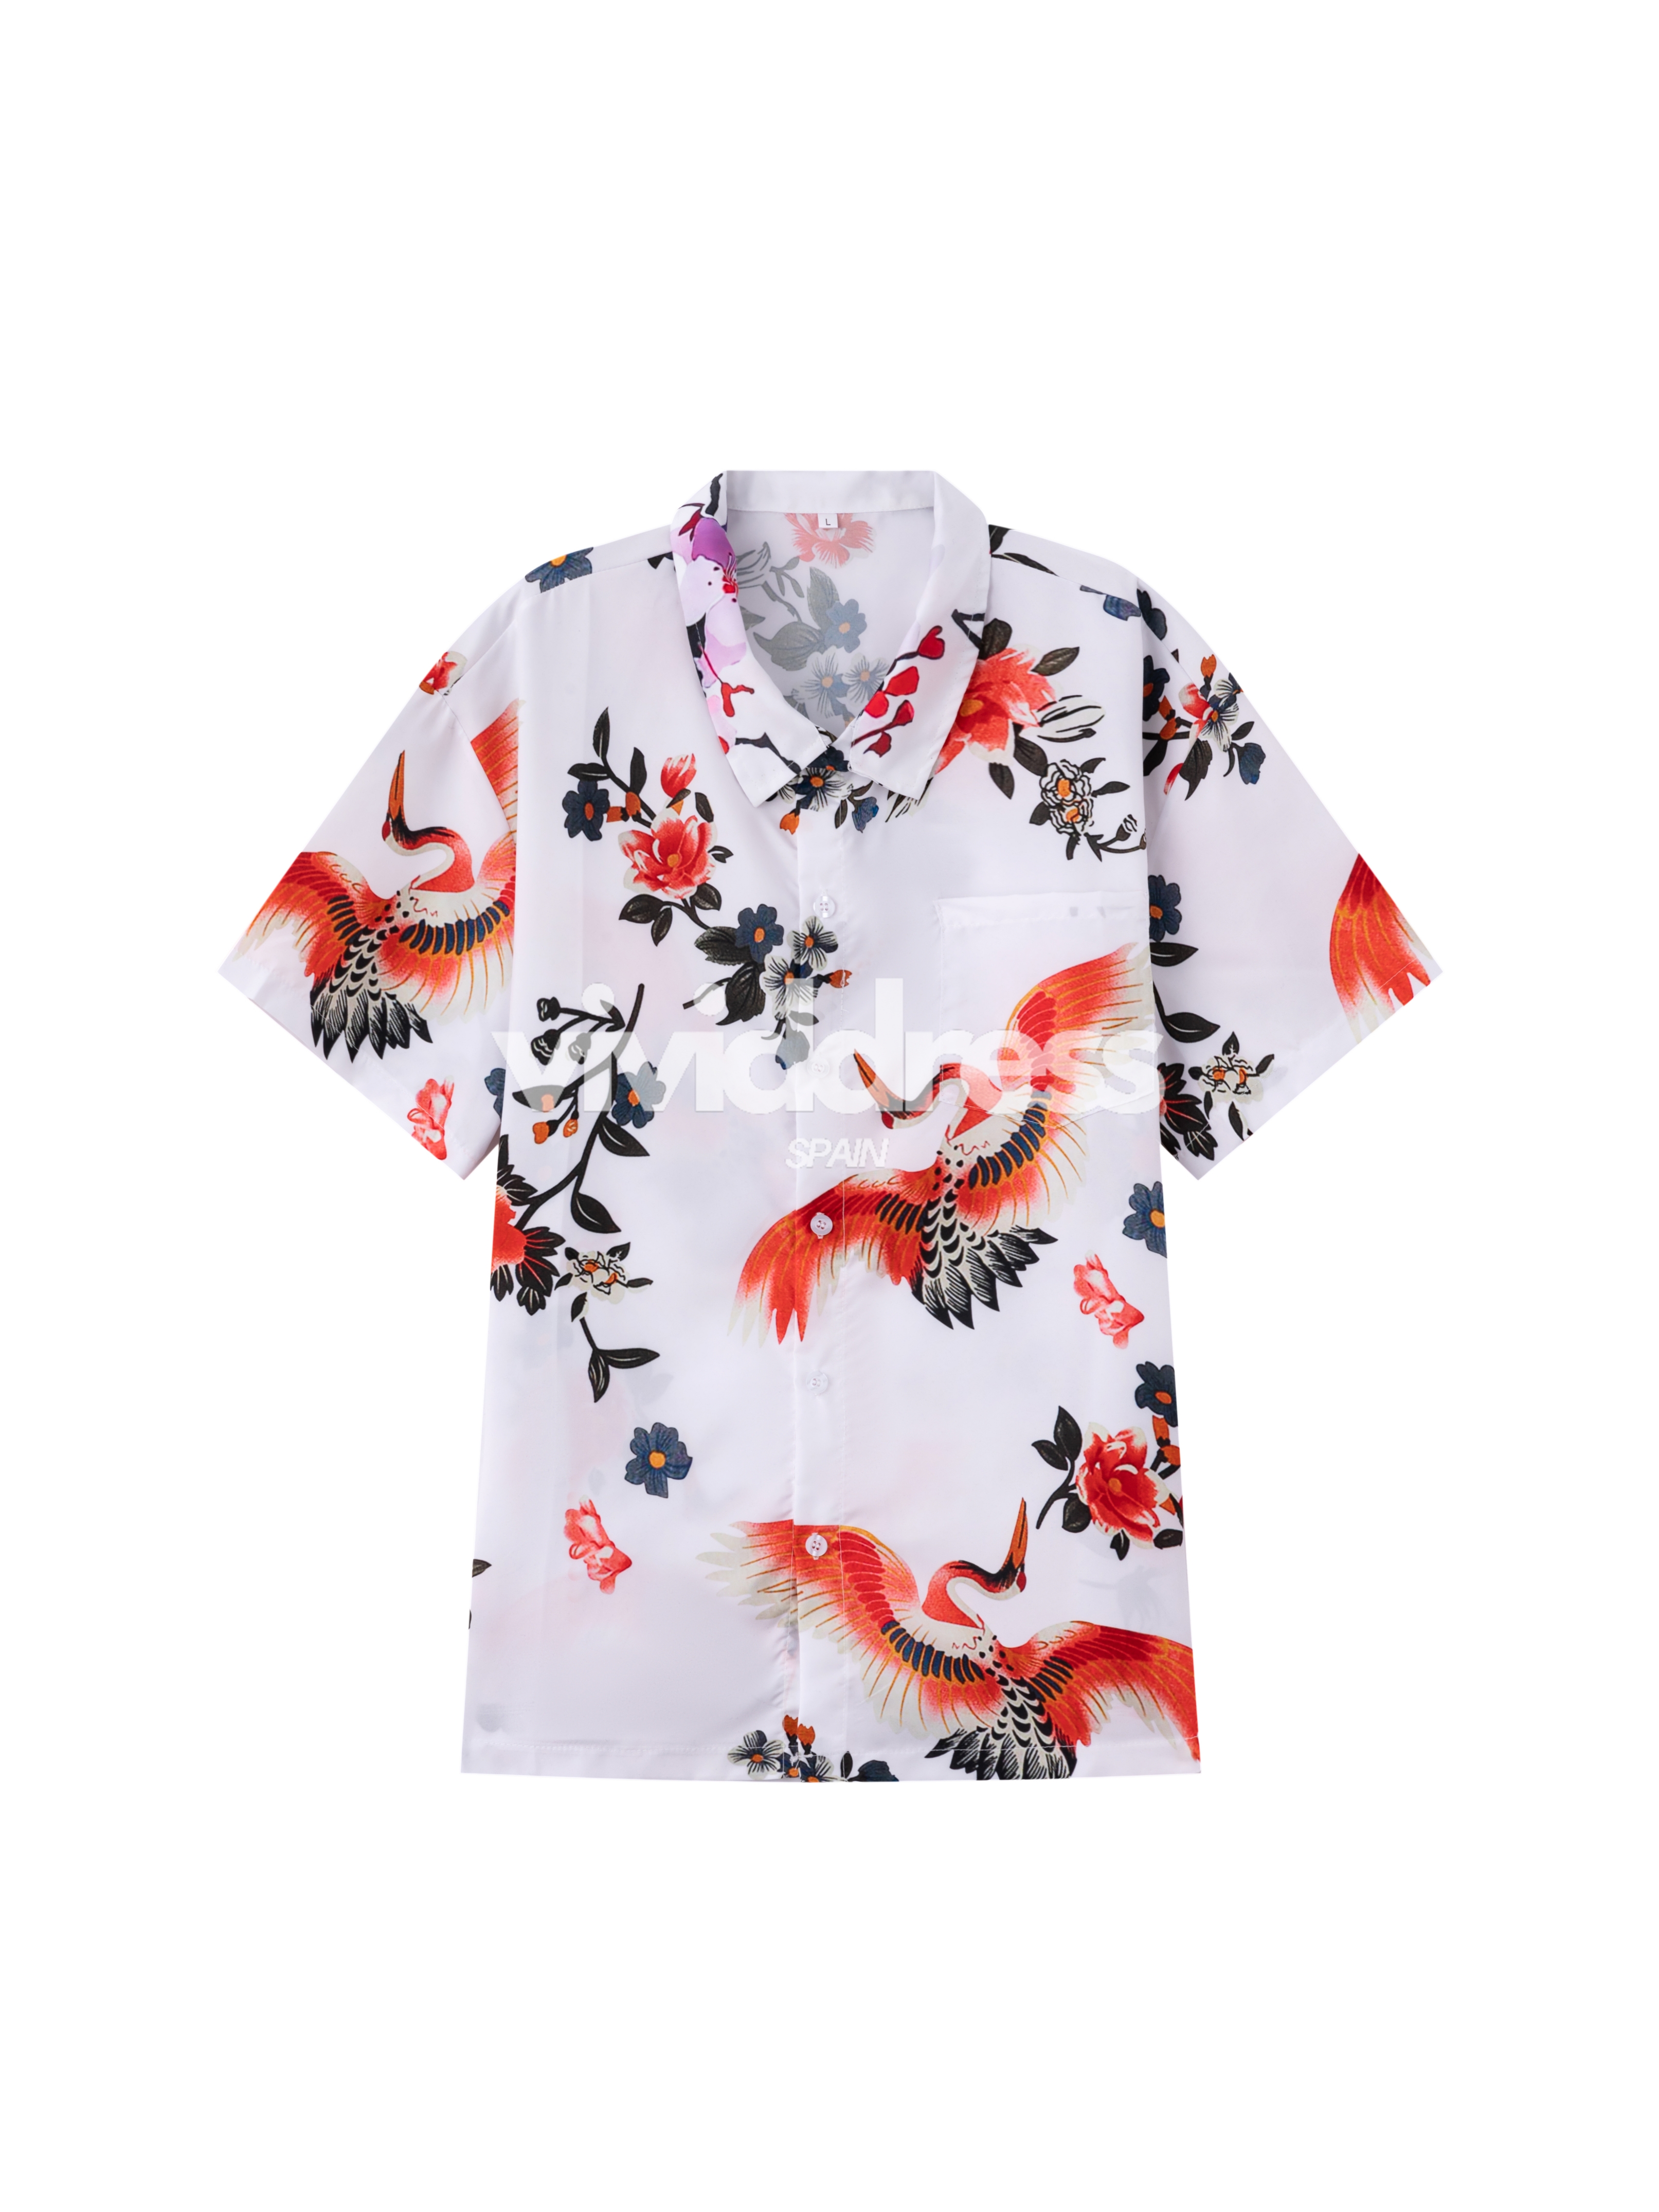 Men's Casual Crane Bird Print Beach Summer Holiday Short Sleeve Shirt